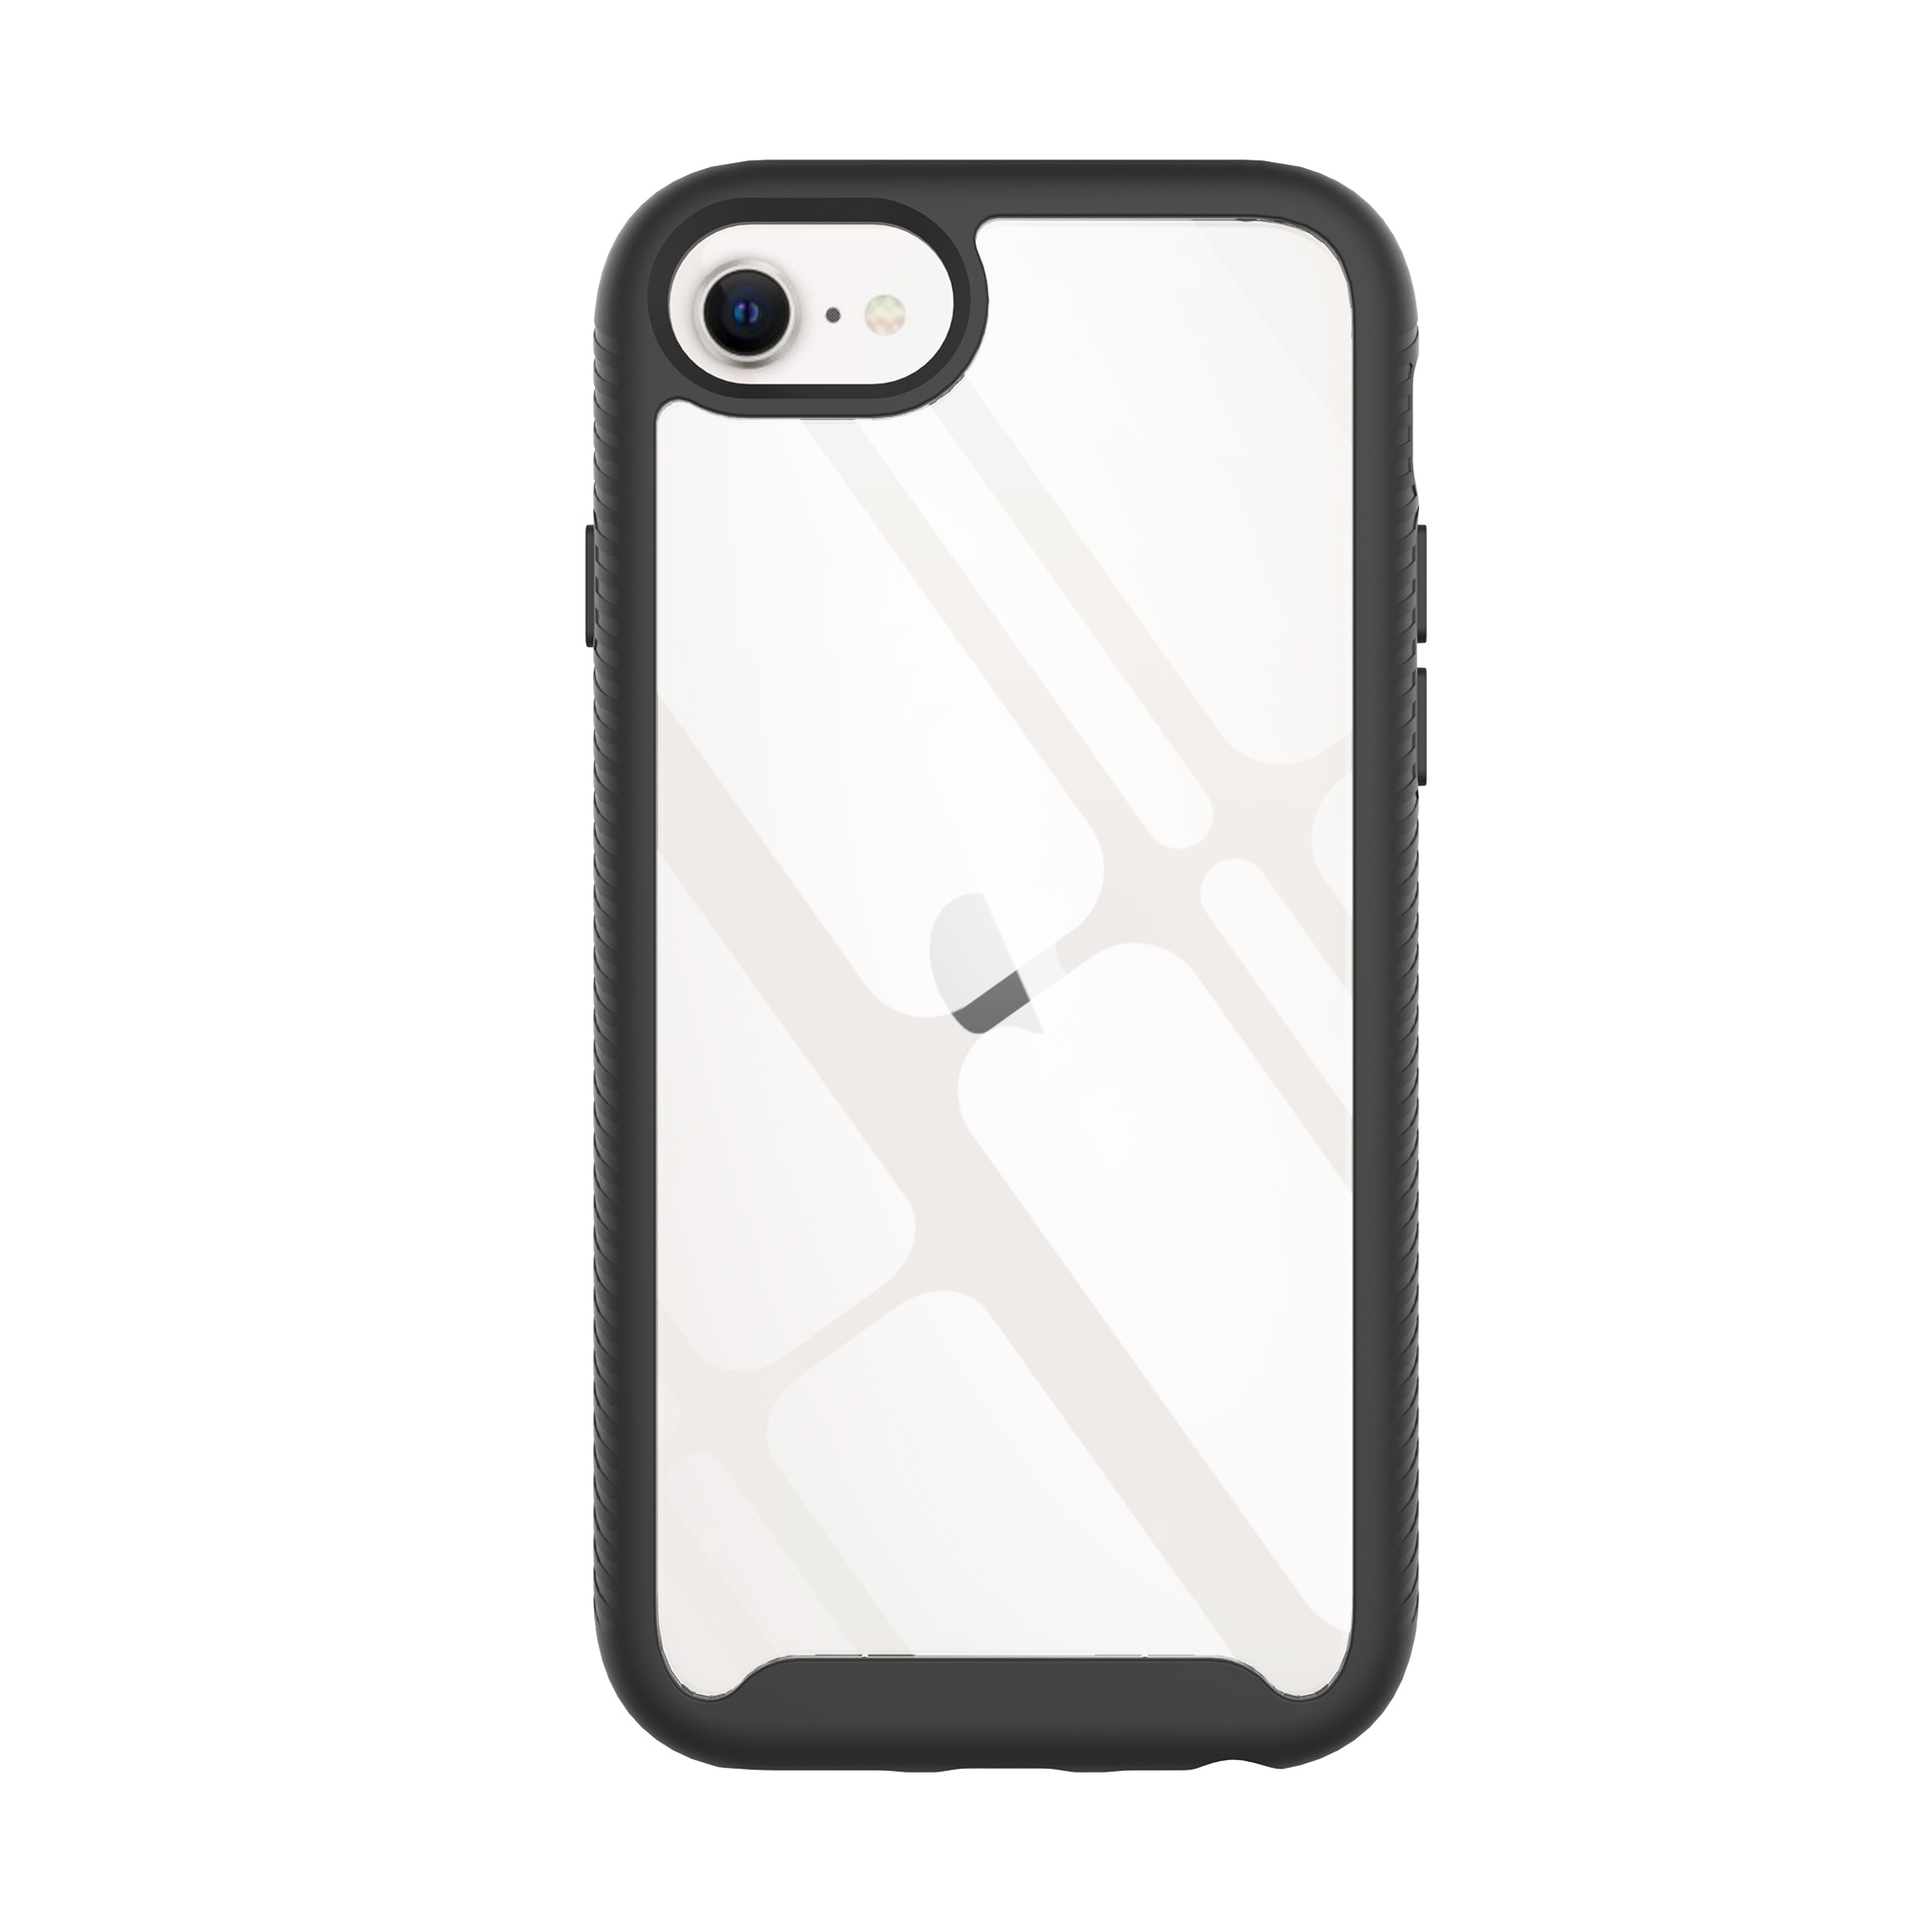 iPhone SE (2020) Mobilskal Full Protection, svart